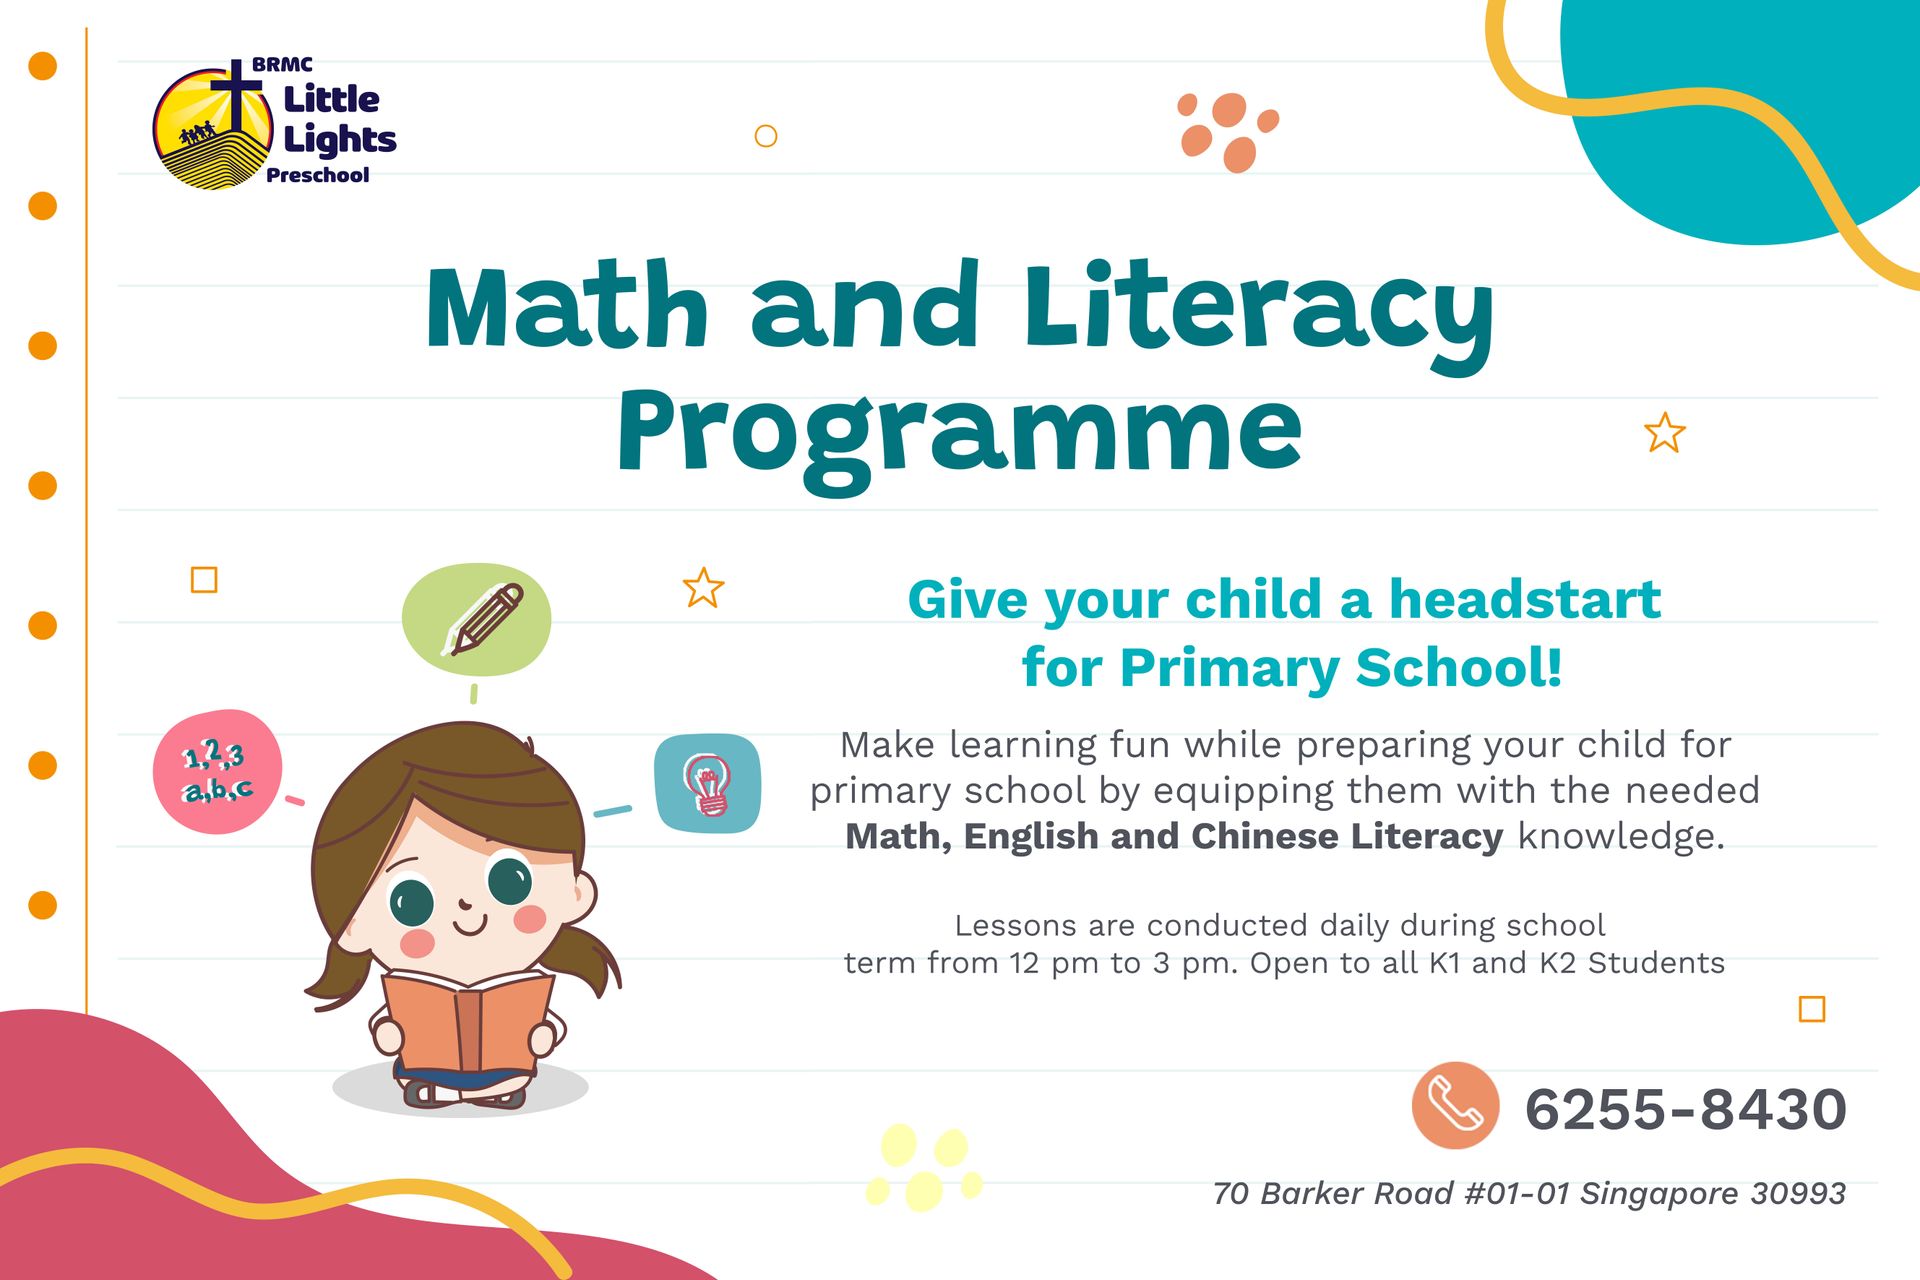 BRMC Little Lights Preschool Math and Literacy Programme